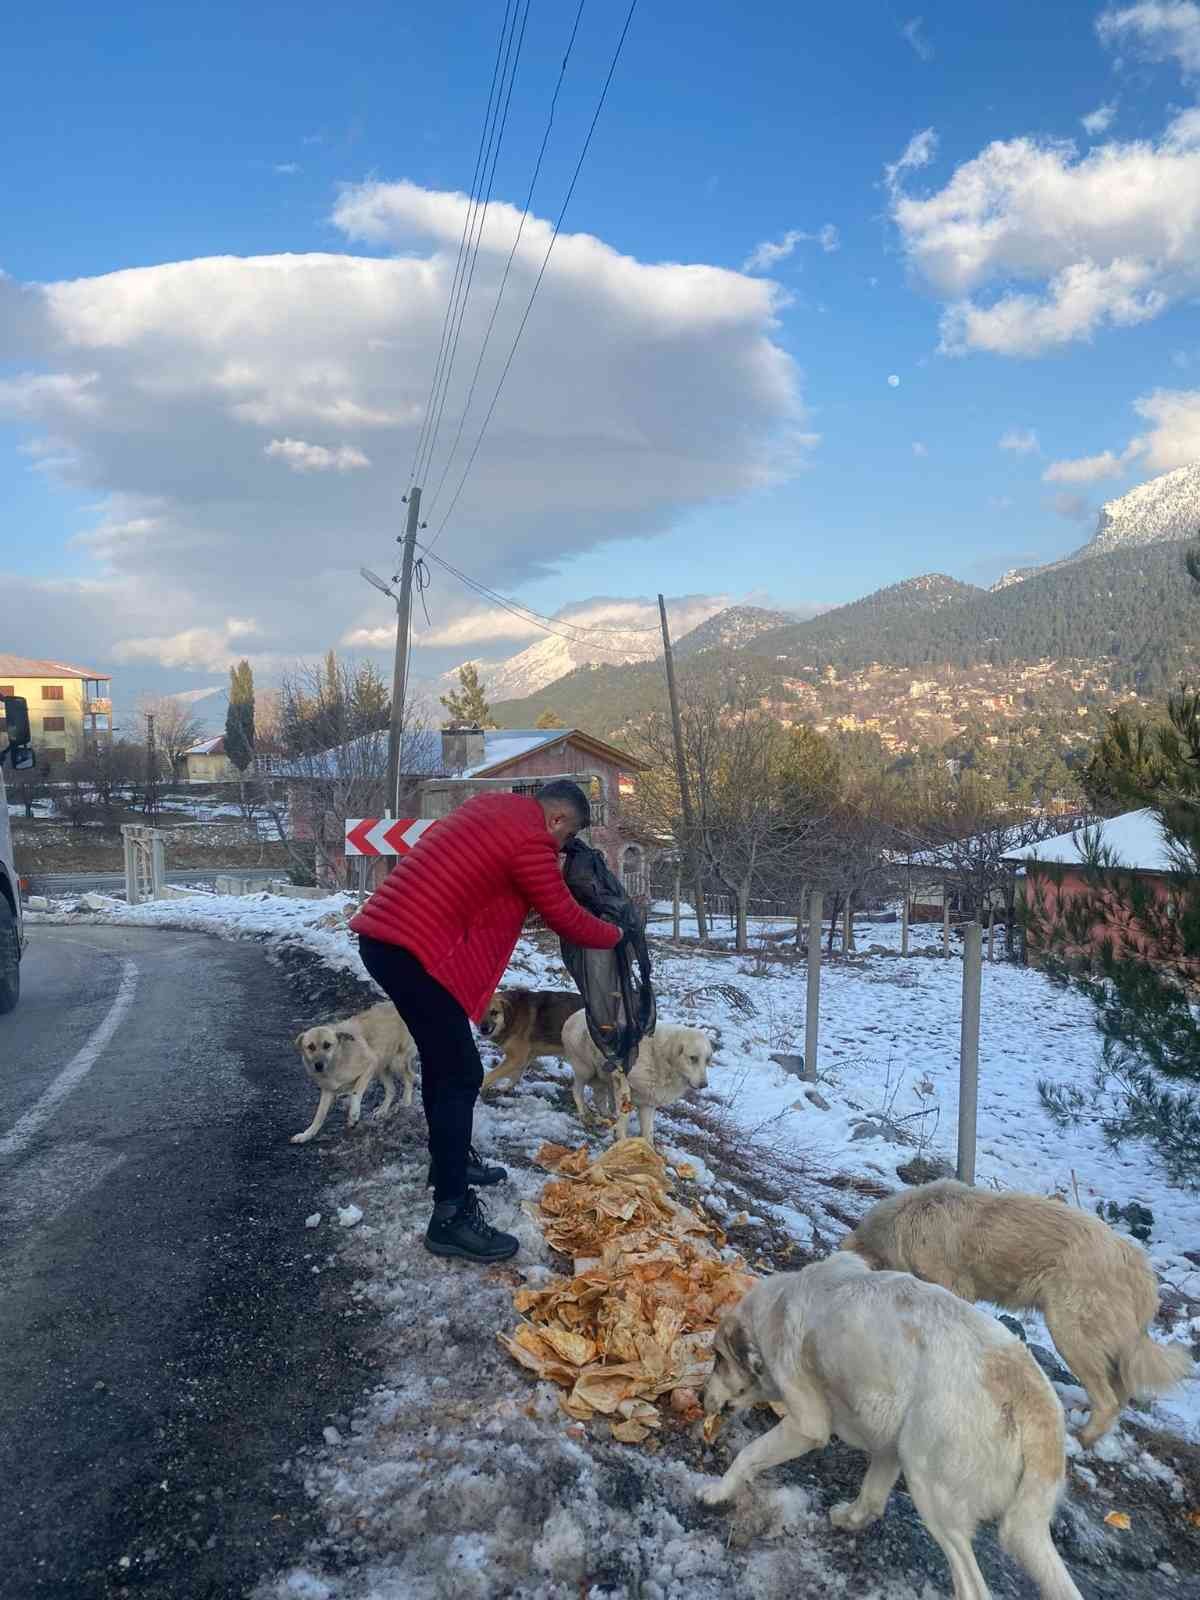 Piton döner karda aç kalan sokak köpeklerinin yanında #adana